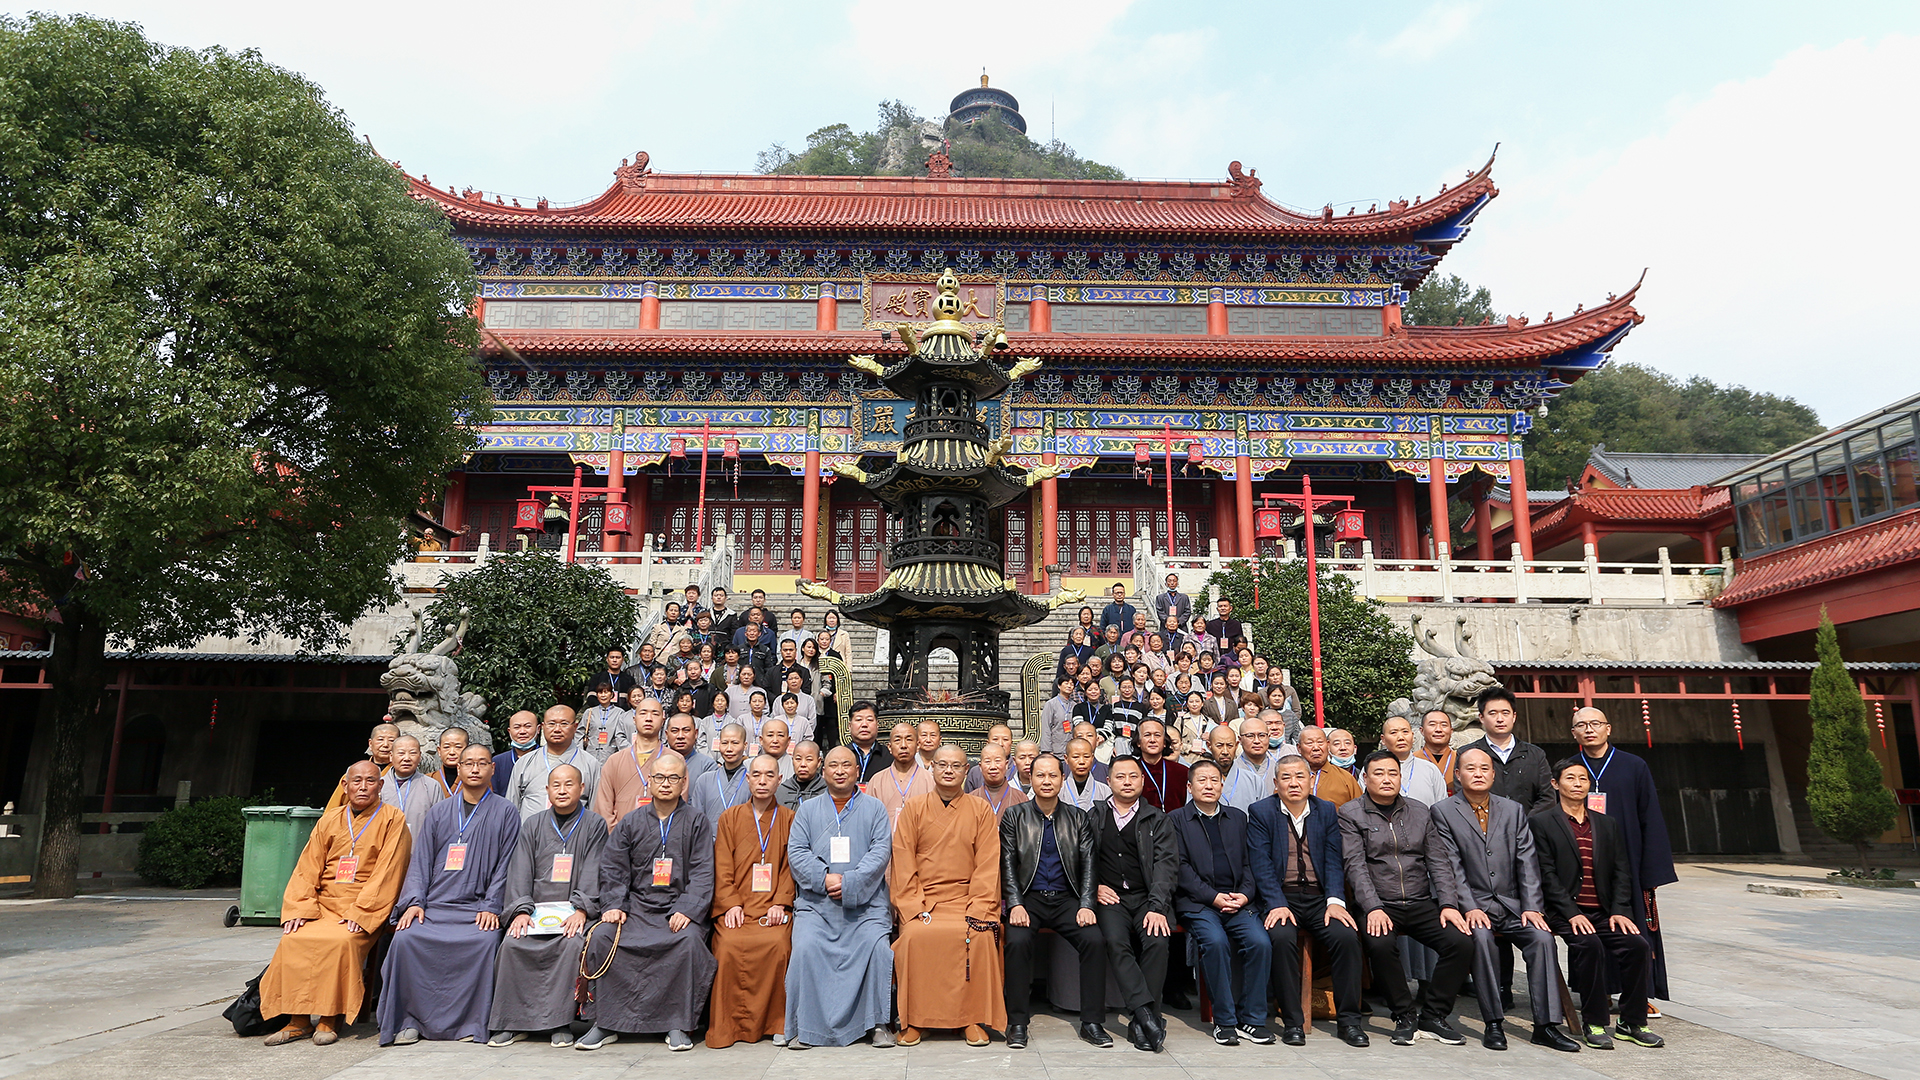 马鞍山市和县佛教协会召开第七届代表大会 定昌法师当选会长